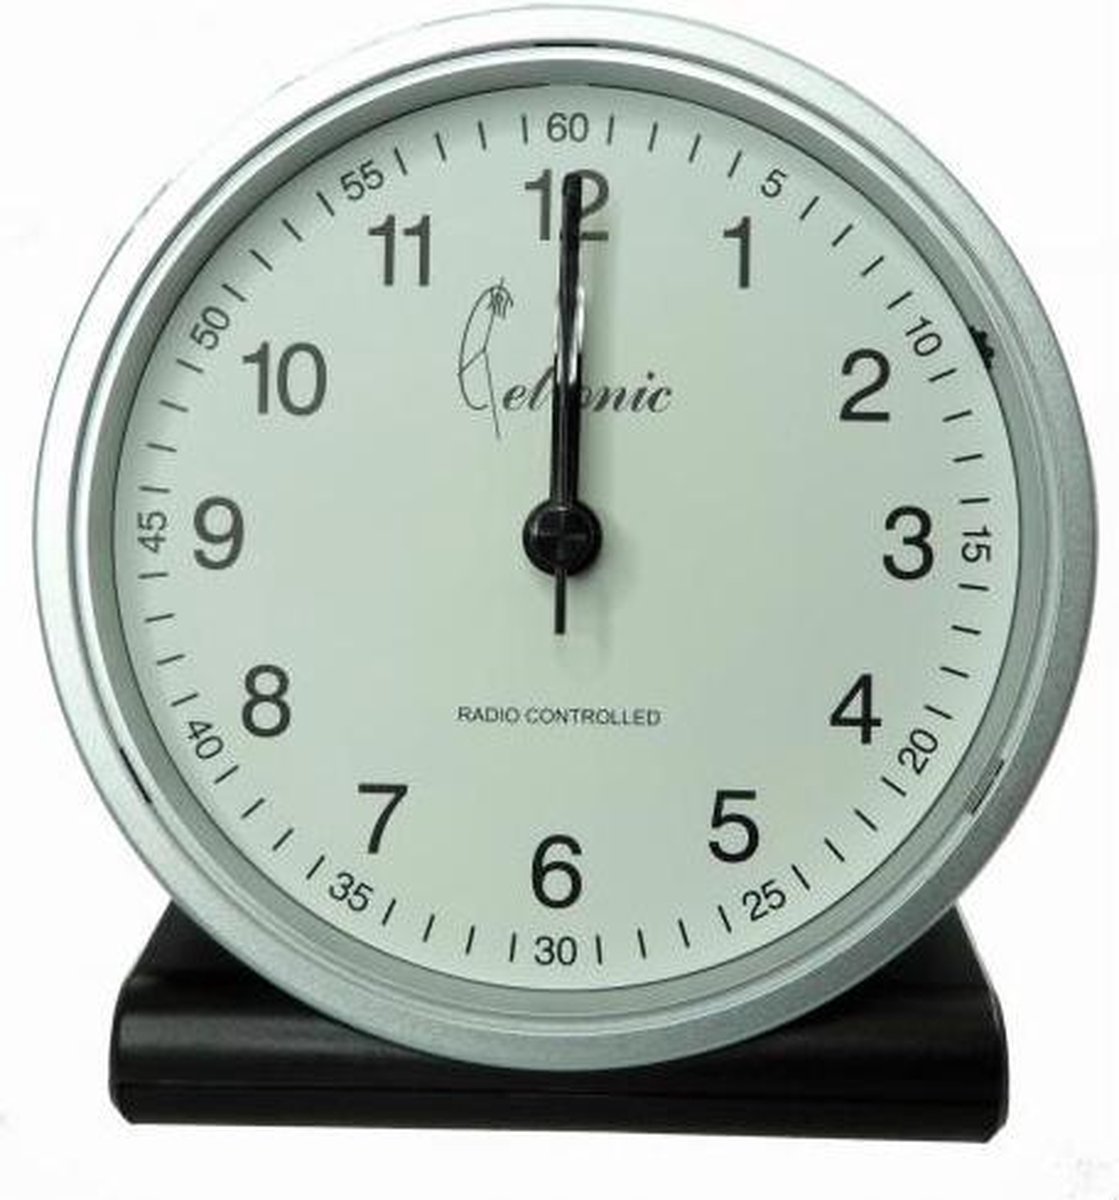 Cetronic T068C2 S - Wekker - Analoog - Radiogestuurde tijdsaanduiding - Stil uurwerk - Zilverkleurig - Zwart